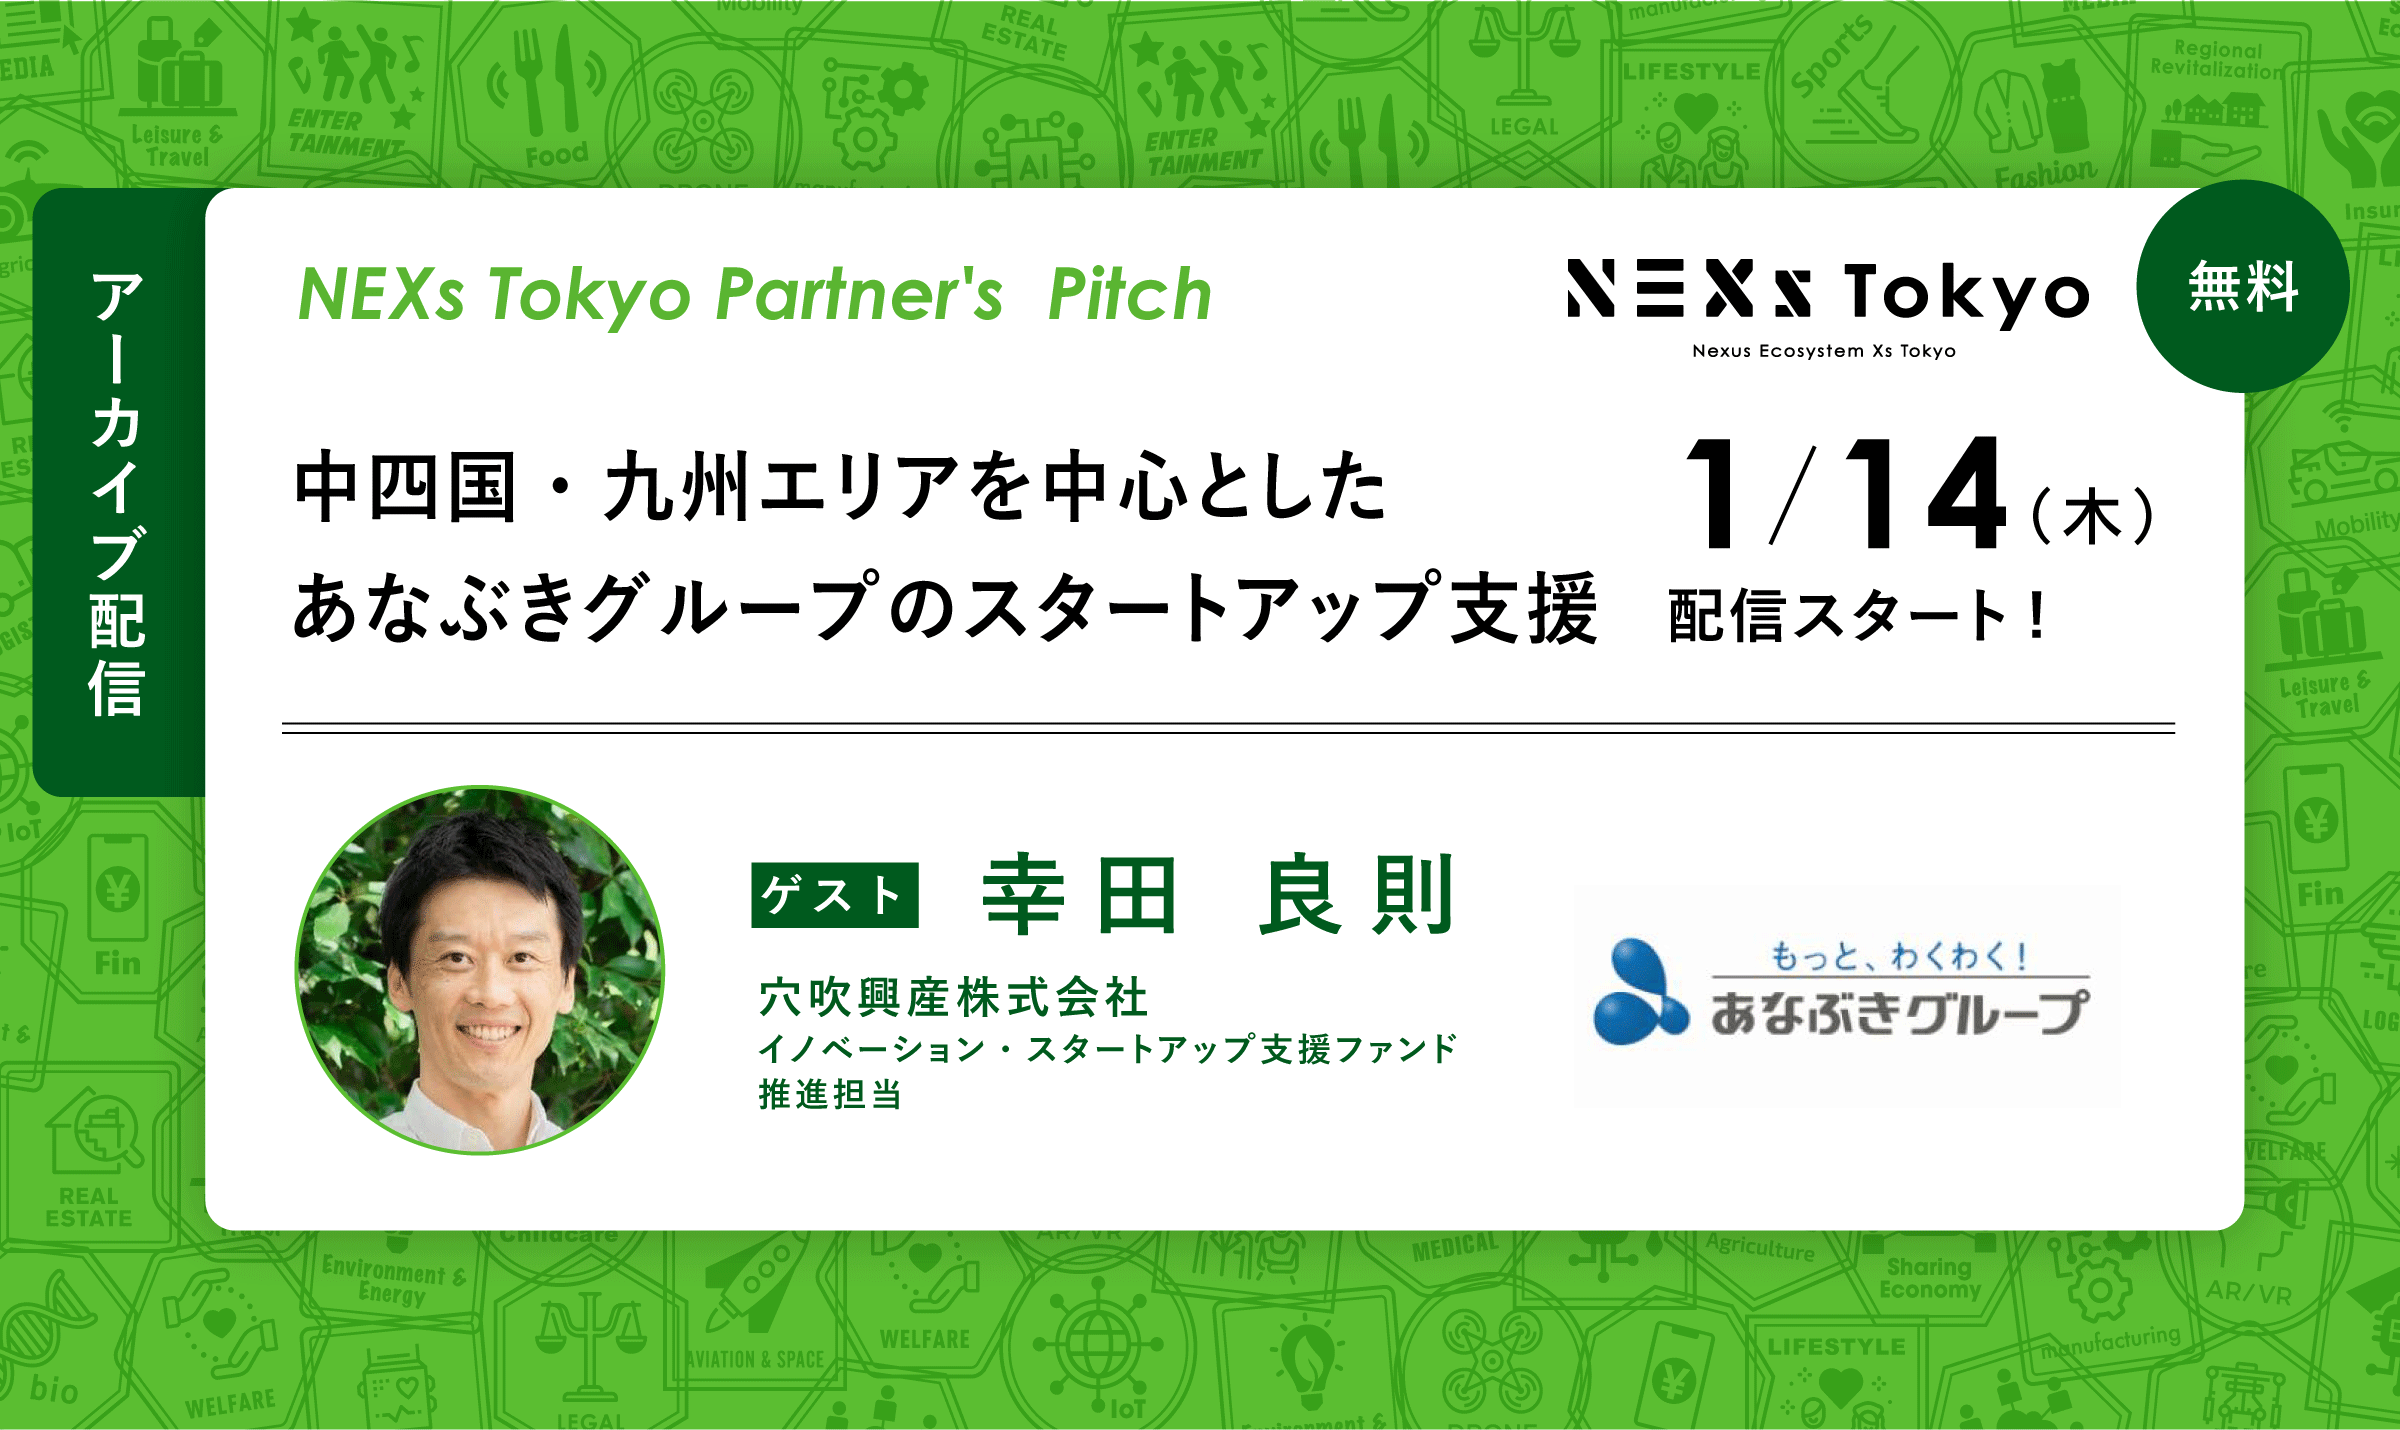 Partner's Pitch〜中四国・九州エリアを中心としたあなぶきグループのスタートアップ支援〜